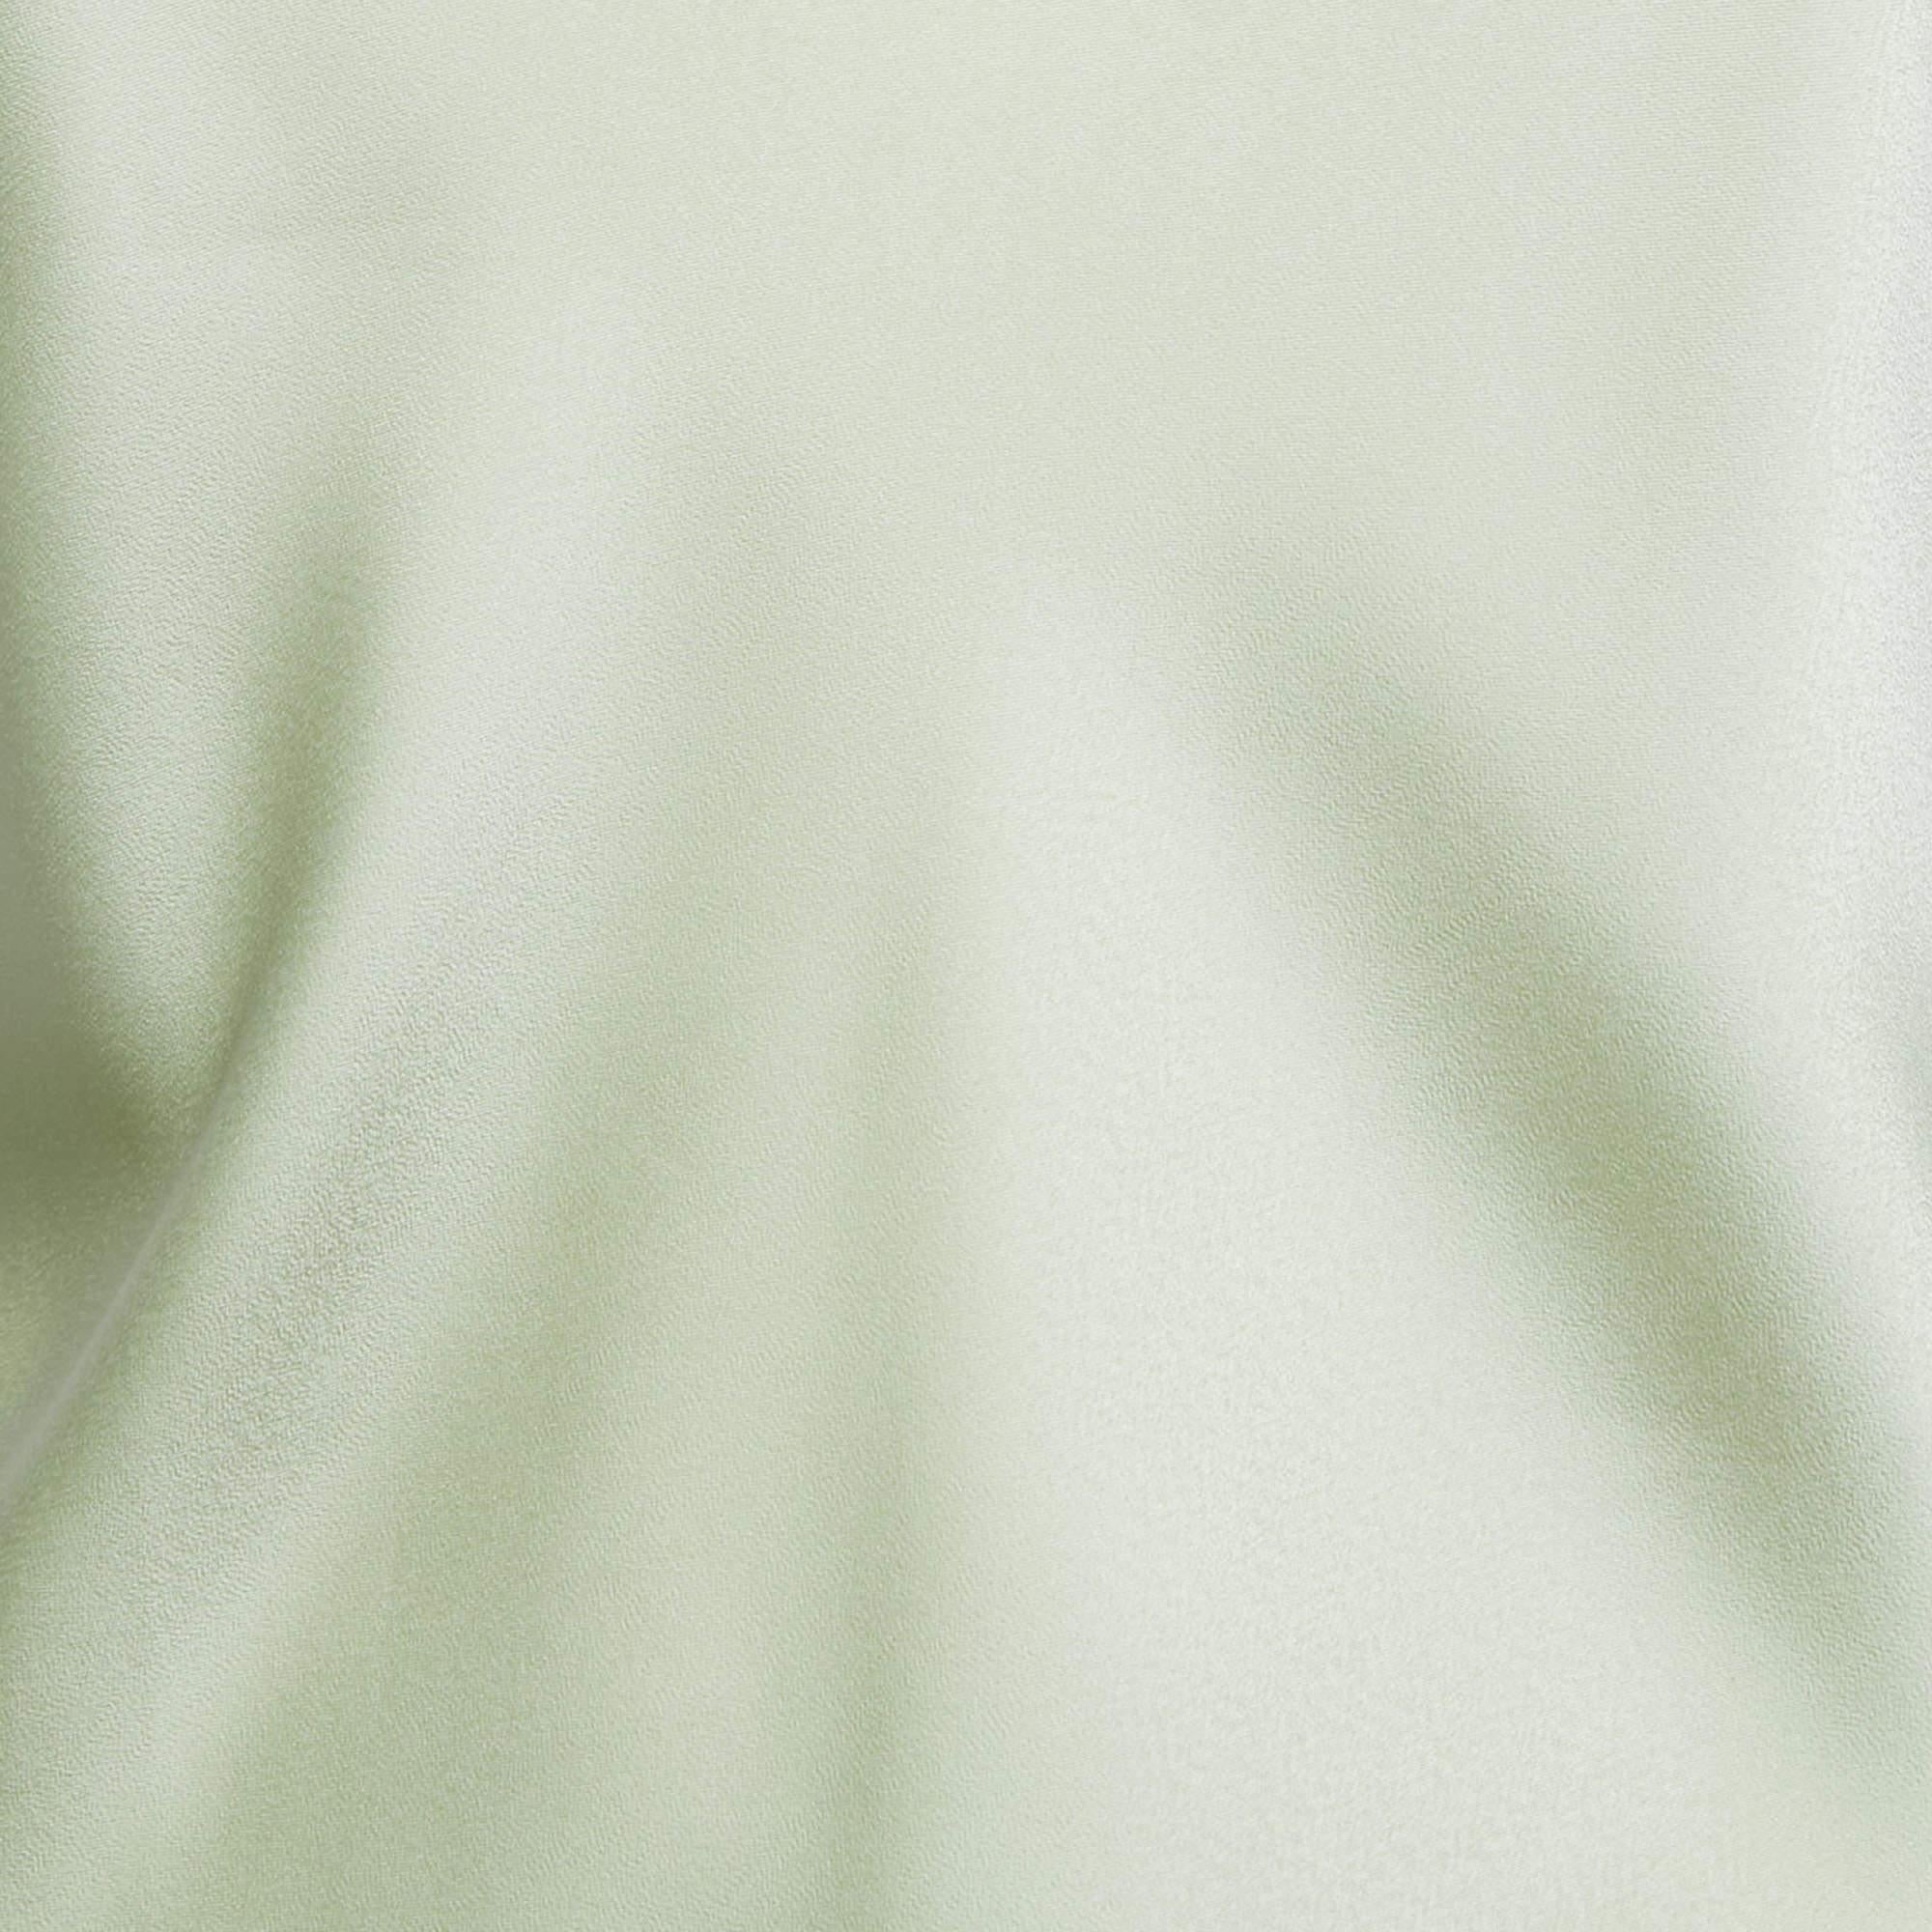 Women's Polo Ralph Lauren Light Green Satin Sleeveless Top M